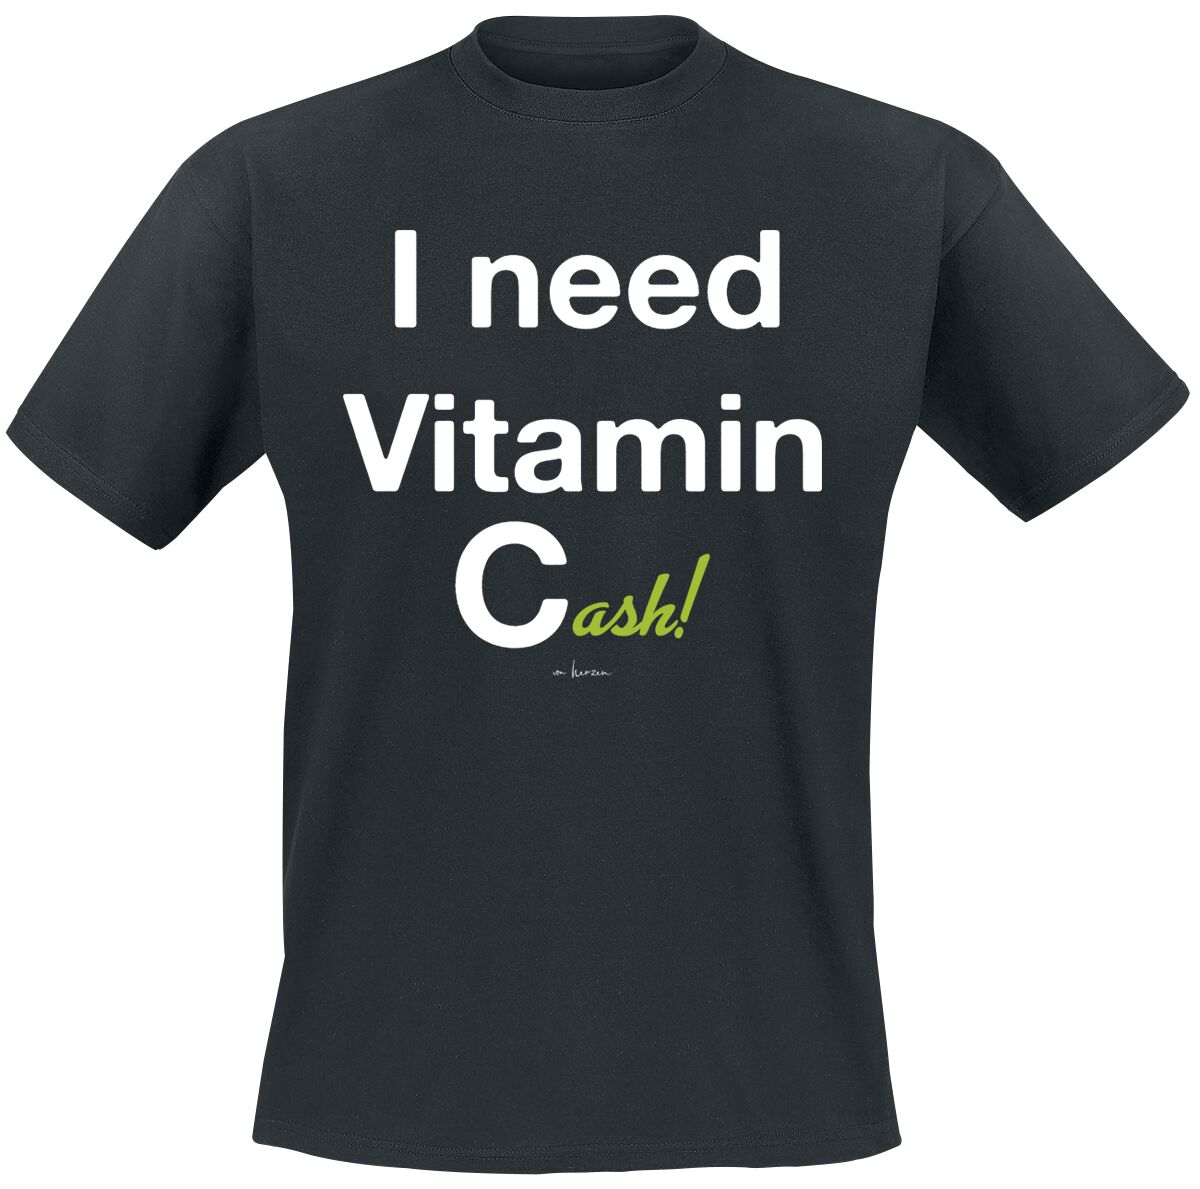 Sprüche T-Shirt - I Need Vitamin Cash! - M bis 3XL - für Männer - Größe L - schwarz